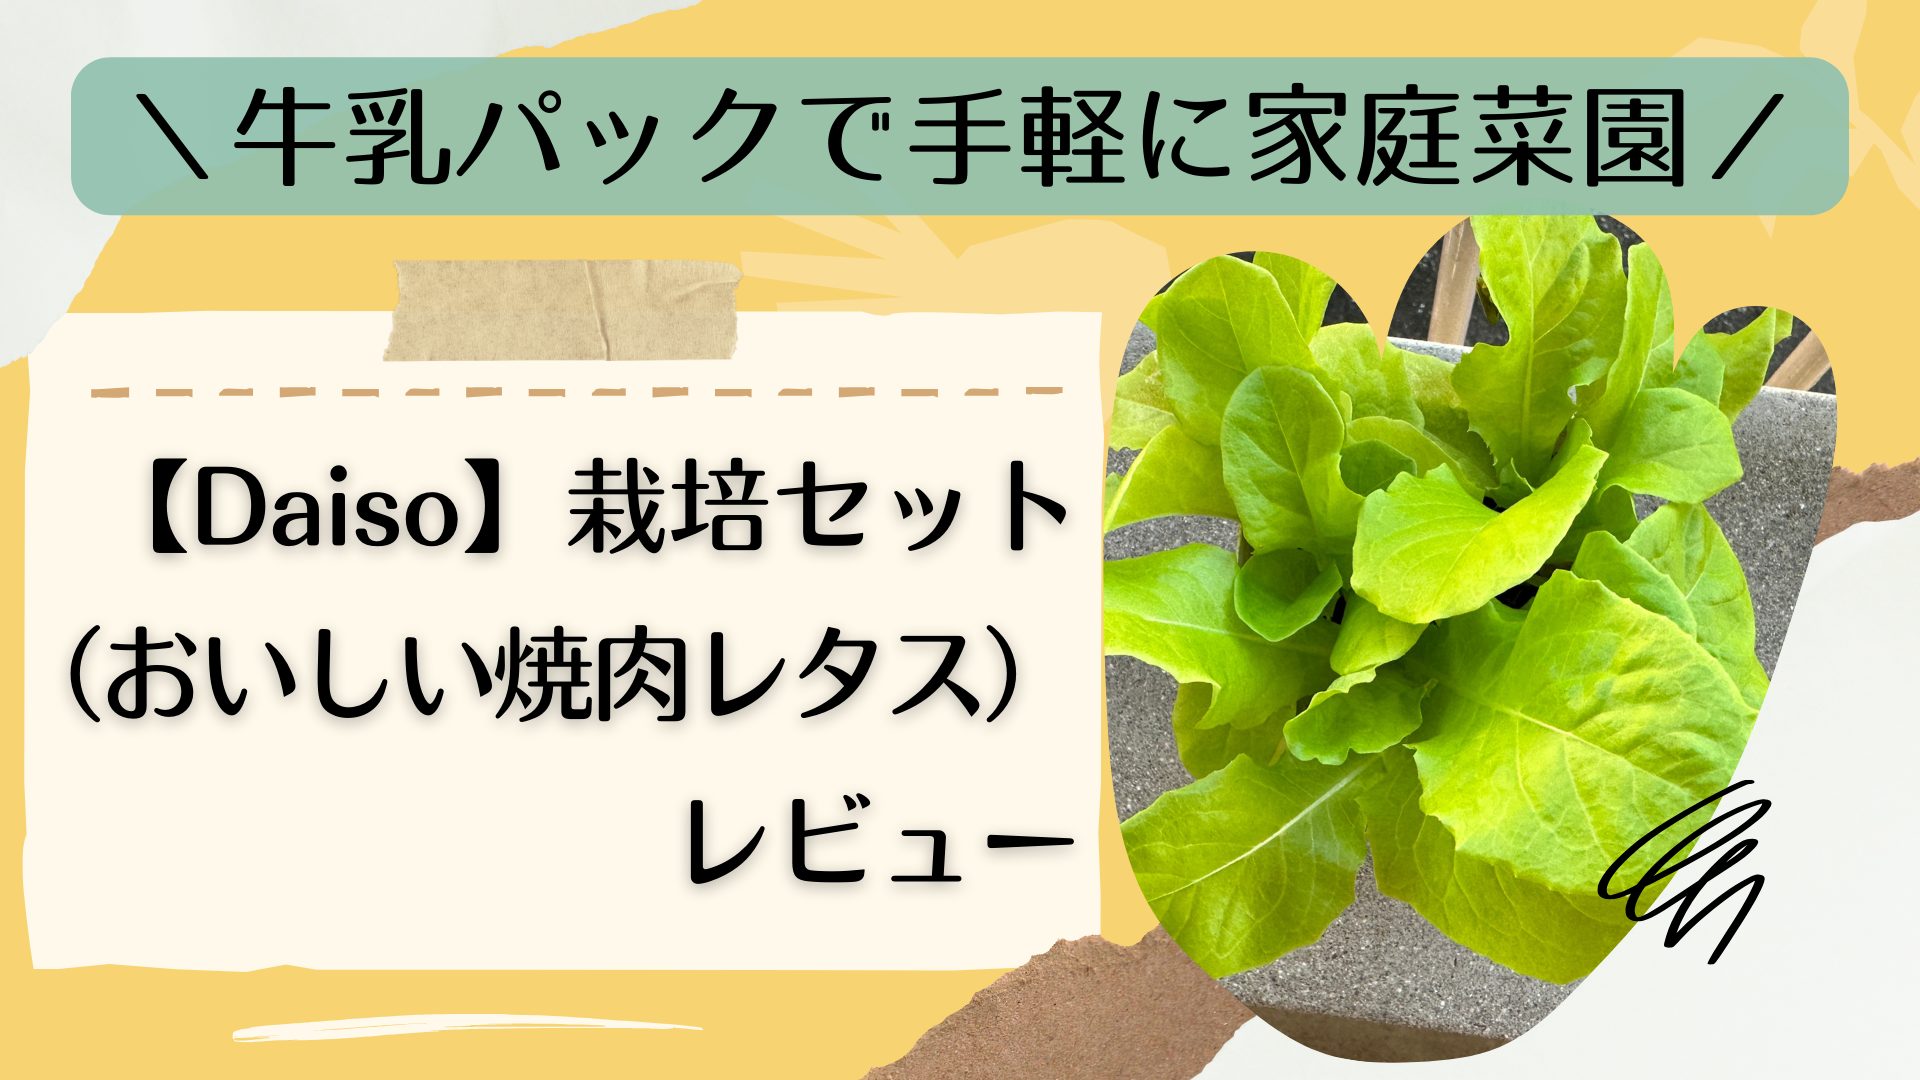 ＼牛乳パックで手軽に家庭菜園／【Daiso】栽培セット（おいしい焼肉レタス）レビュー アイキャッチ画像